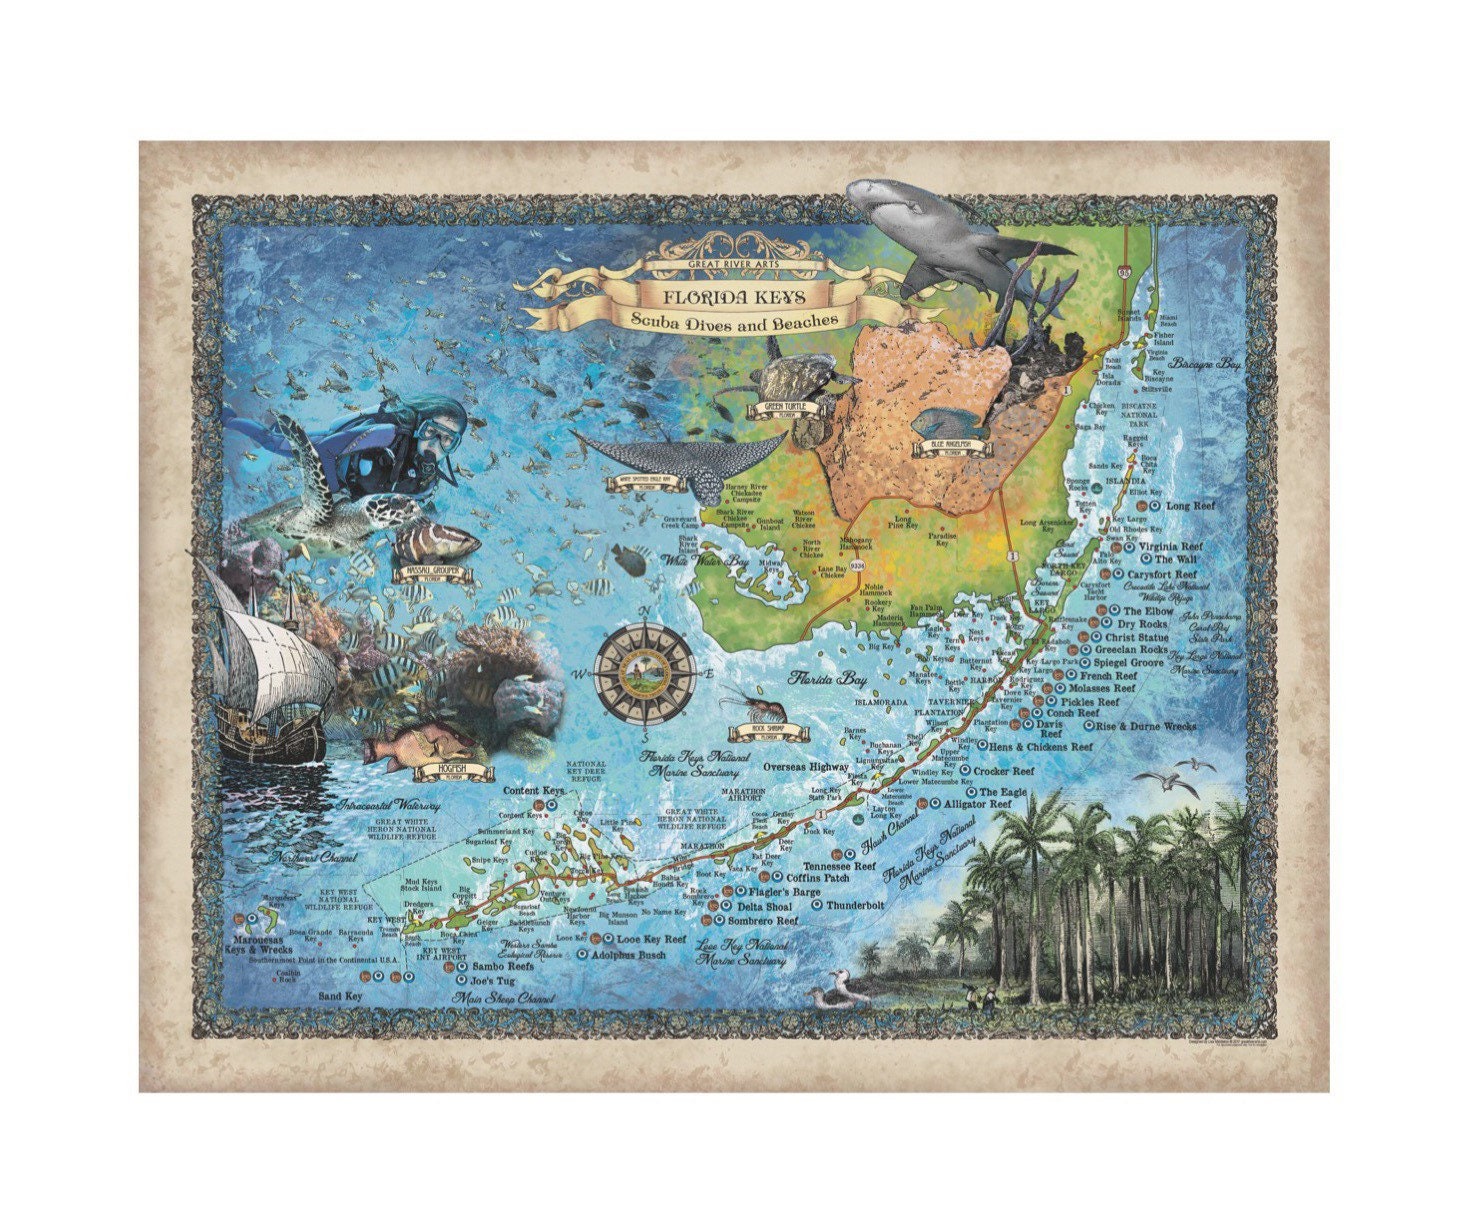 Florida Keys Scuba Diving Map Key West Map Coastal Vintage | Etsy